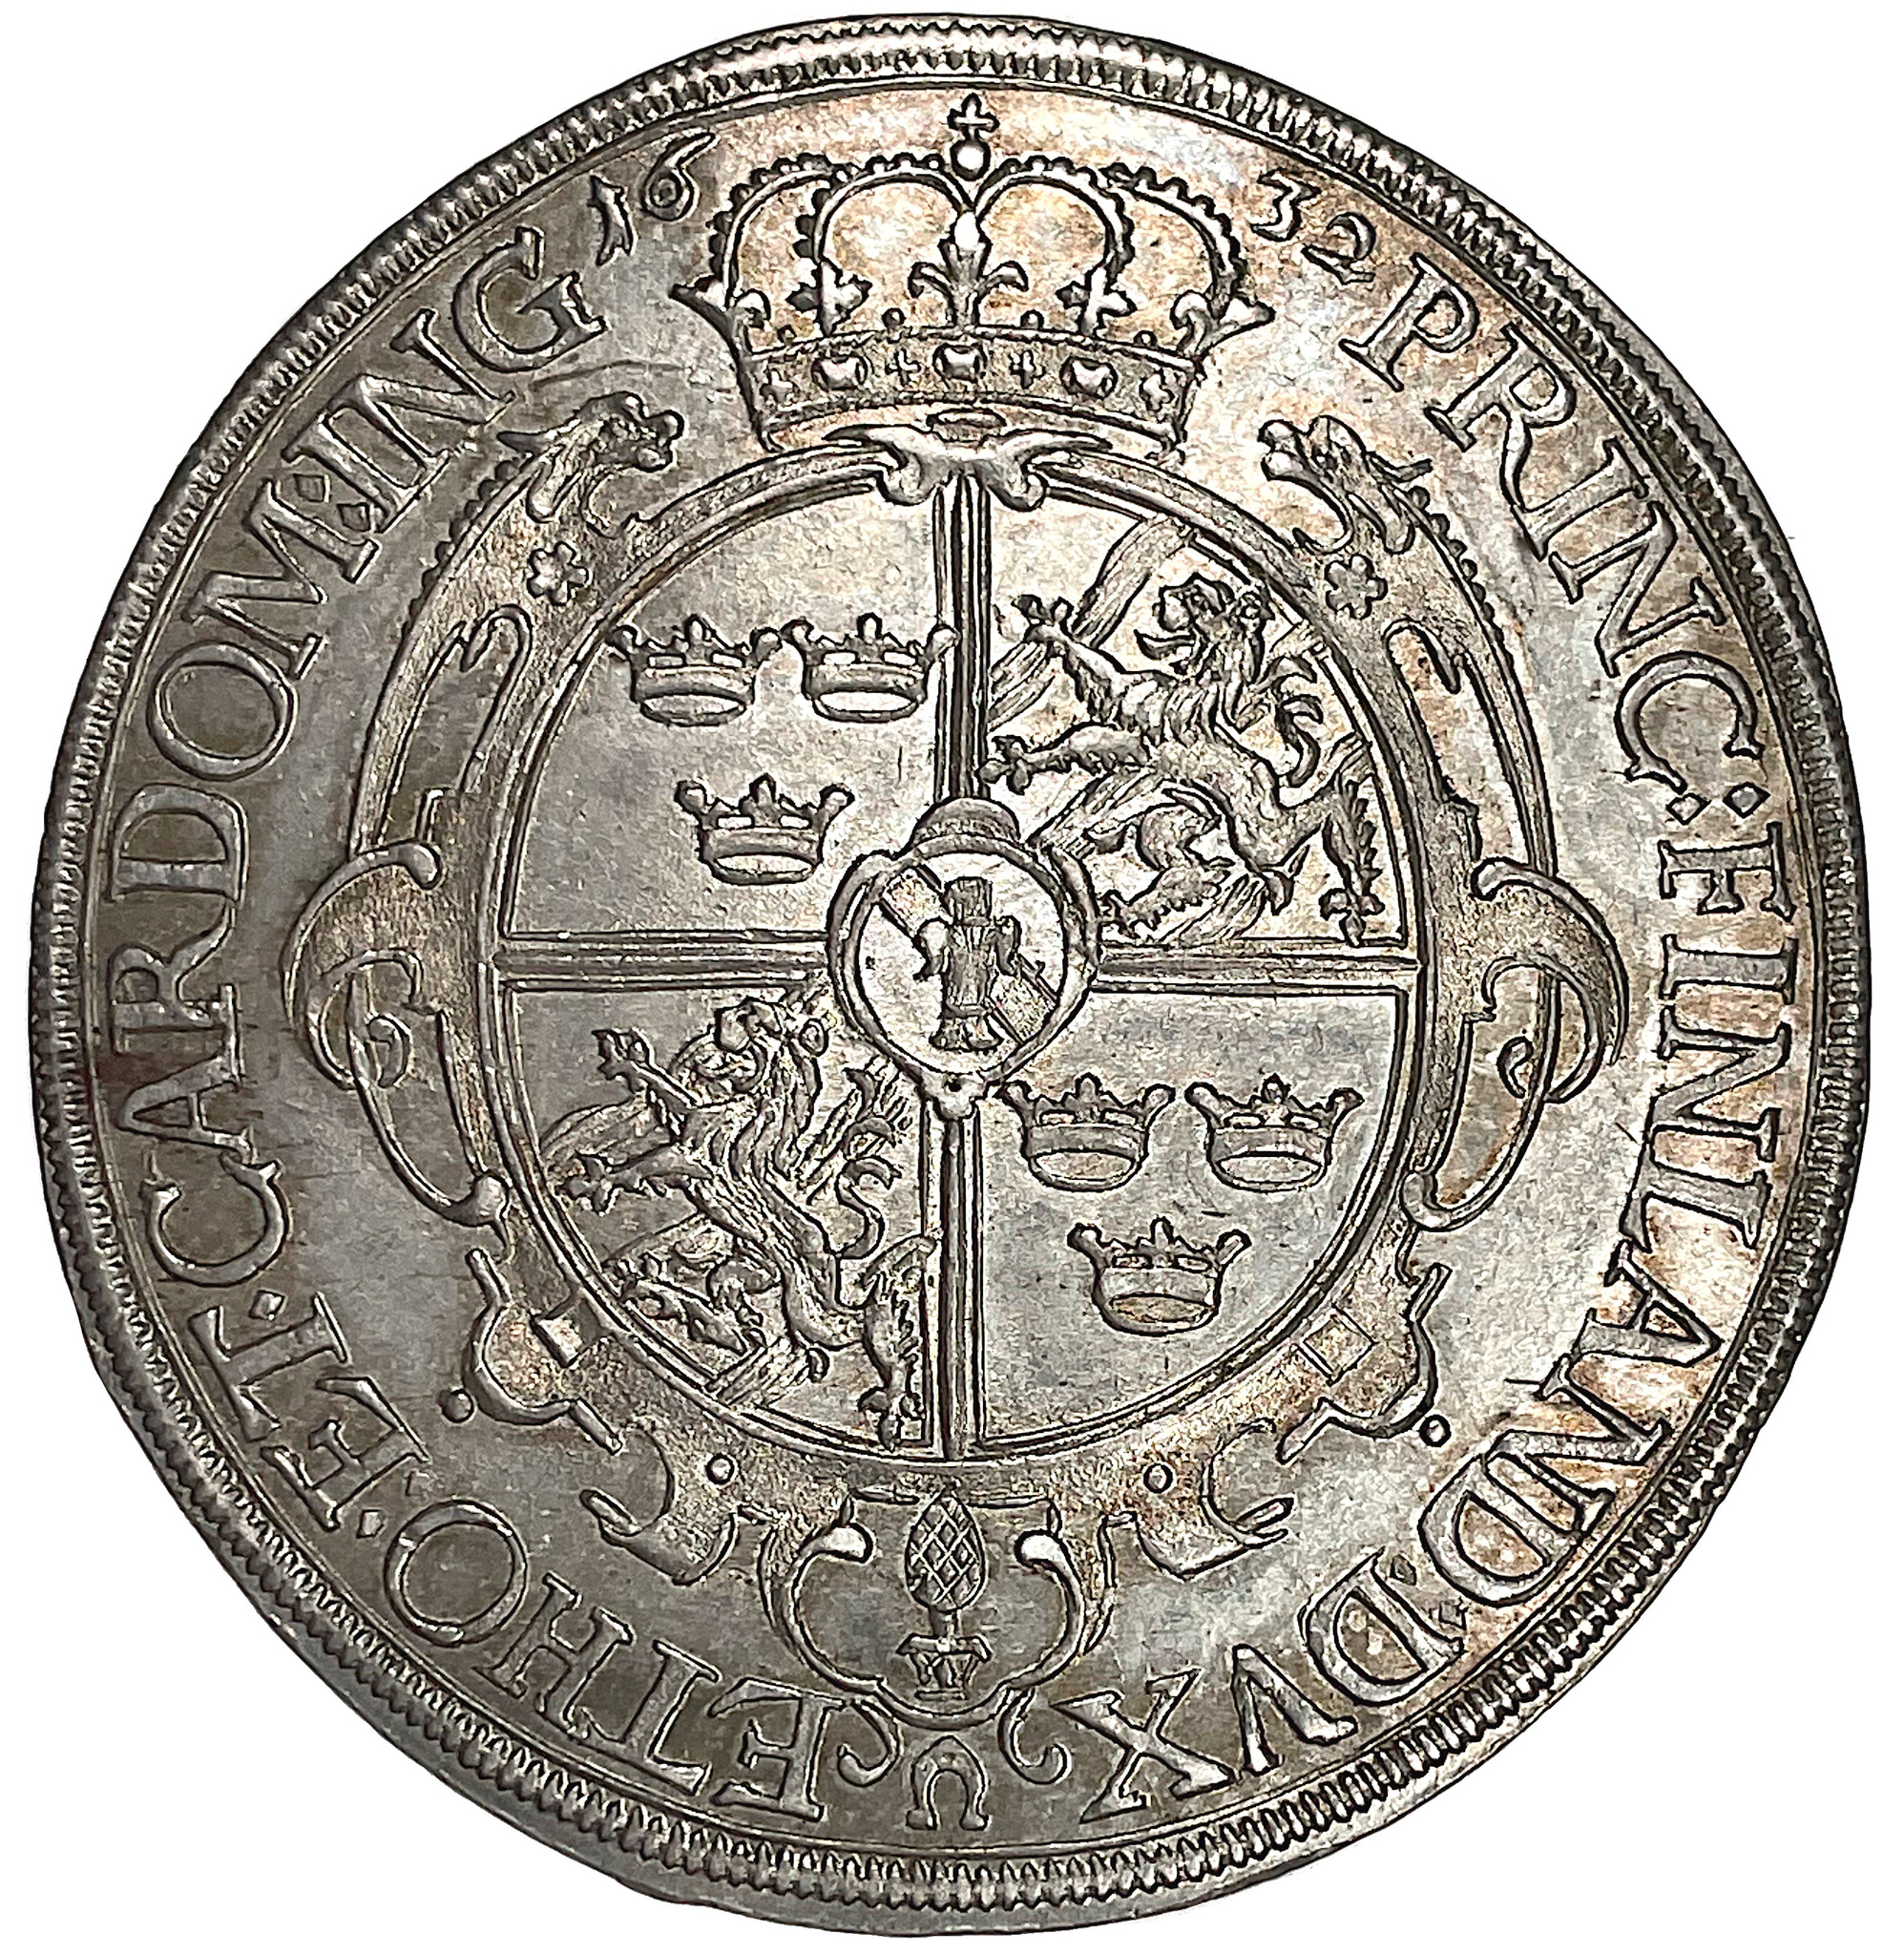 Gustav II Adolf, Augsburg - Mycket vackert exemplar med full präglingsglans